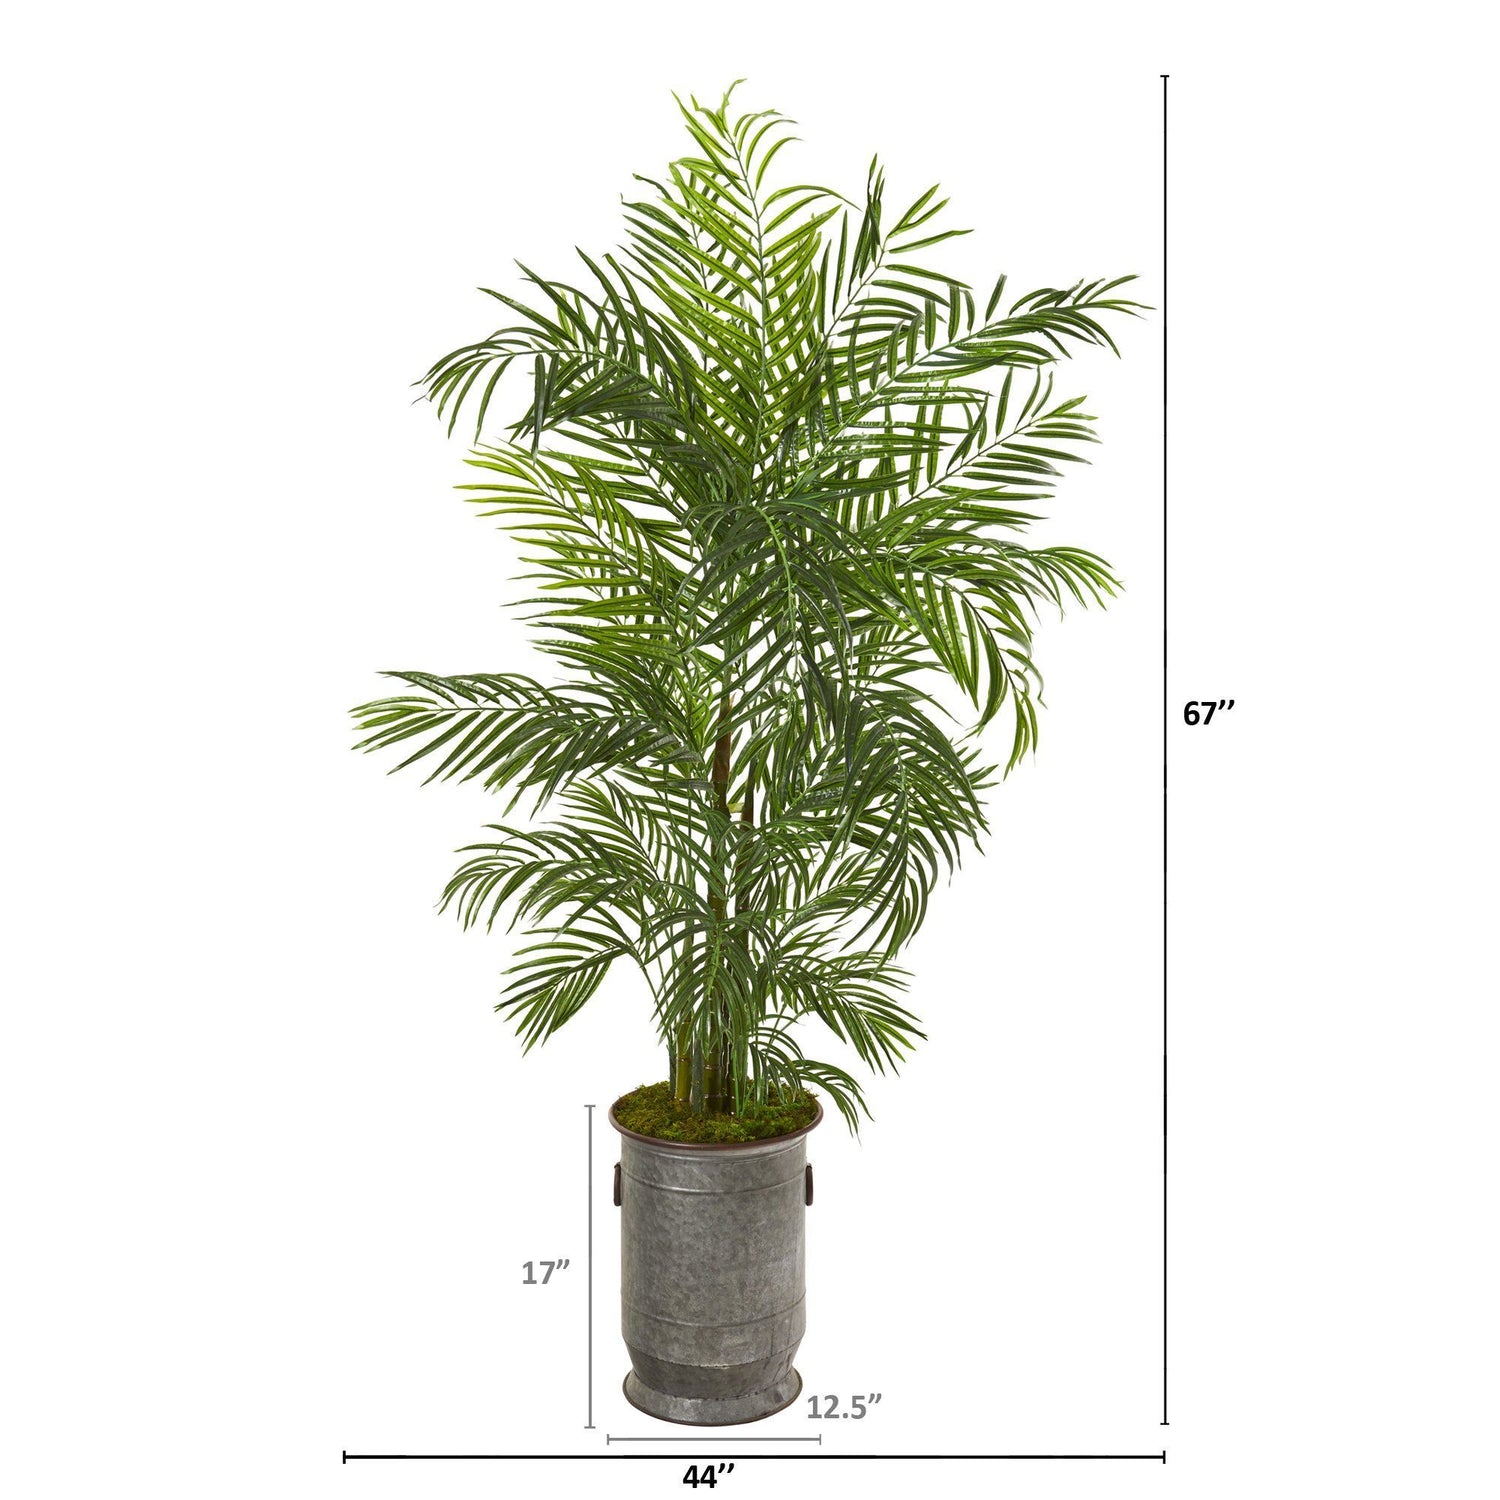 67” Areca Palm Artificial Tree in Vintage Metal Planter (Indoor/Outdoor)